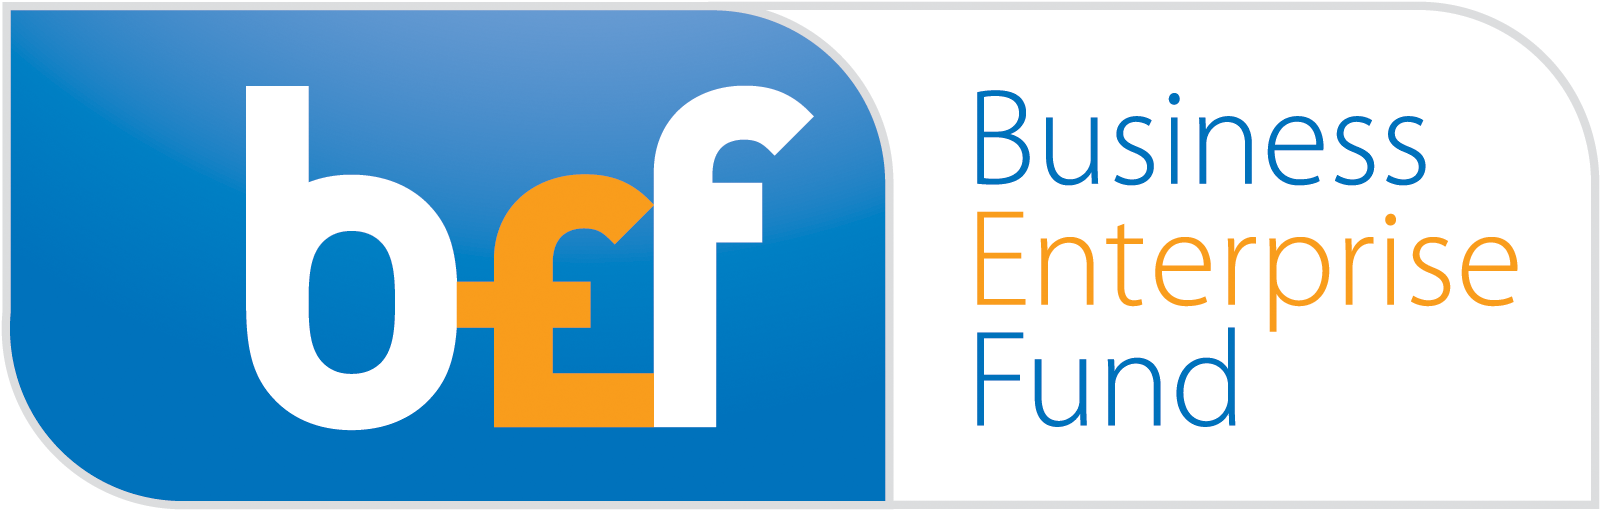 Bef - Business Enterprise Fund (1700x600)